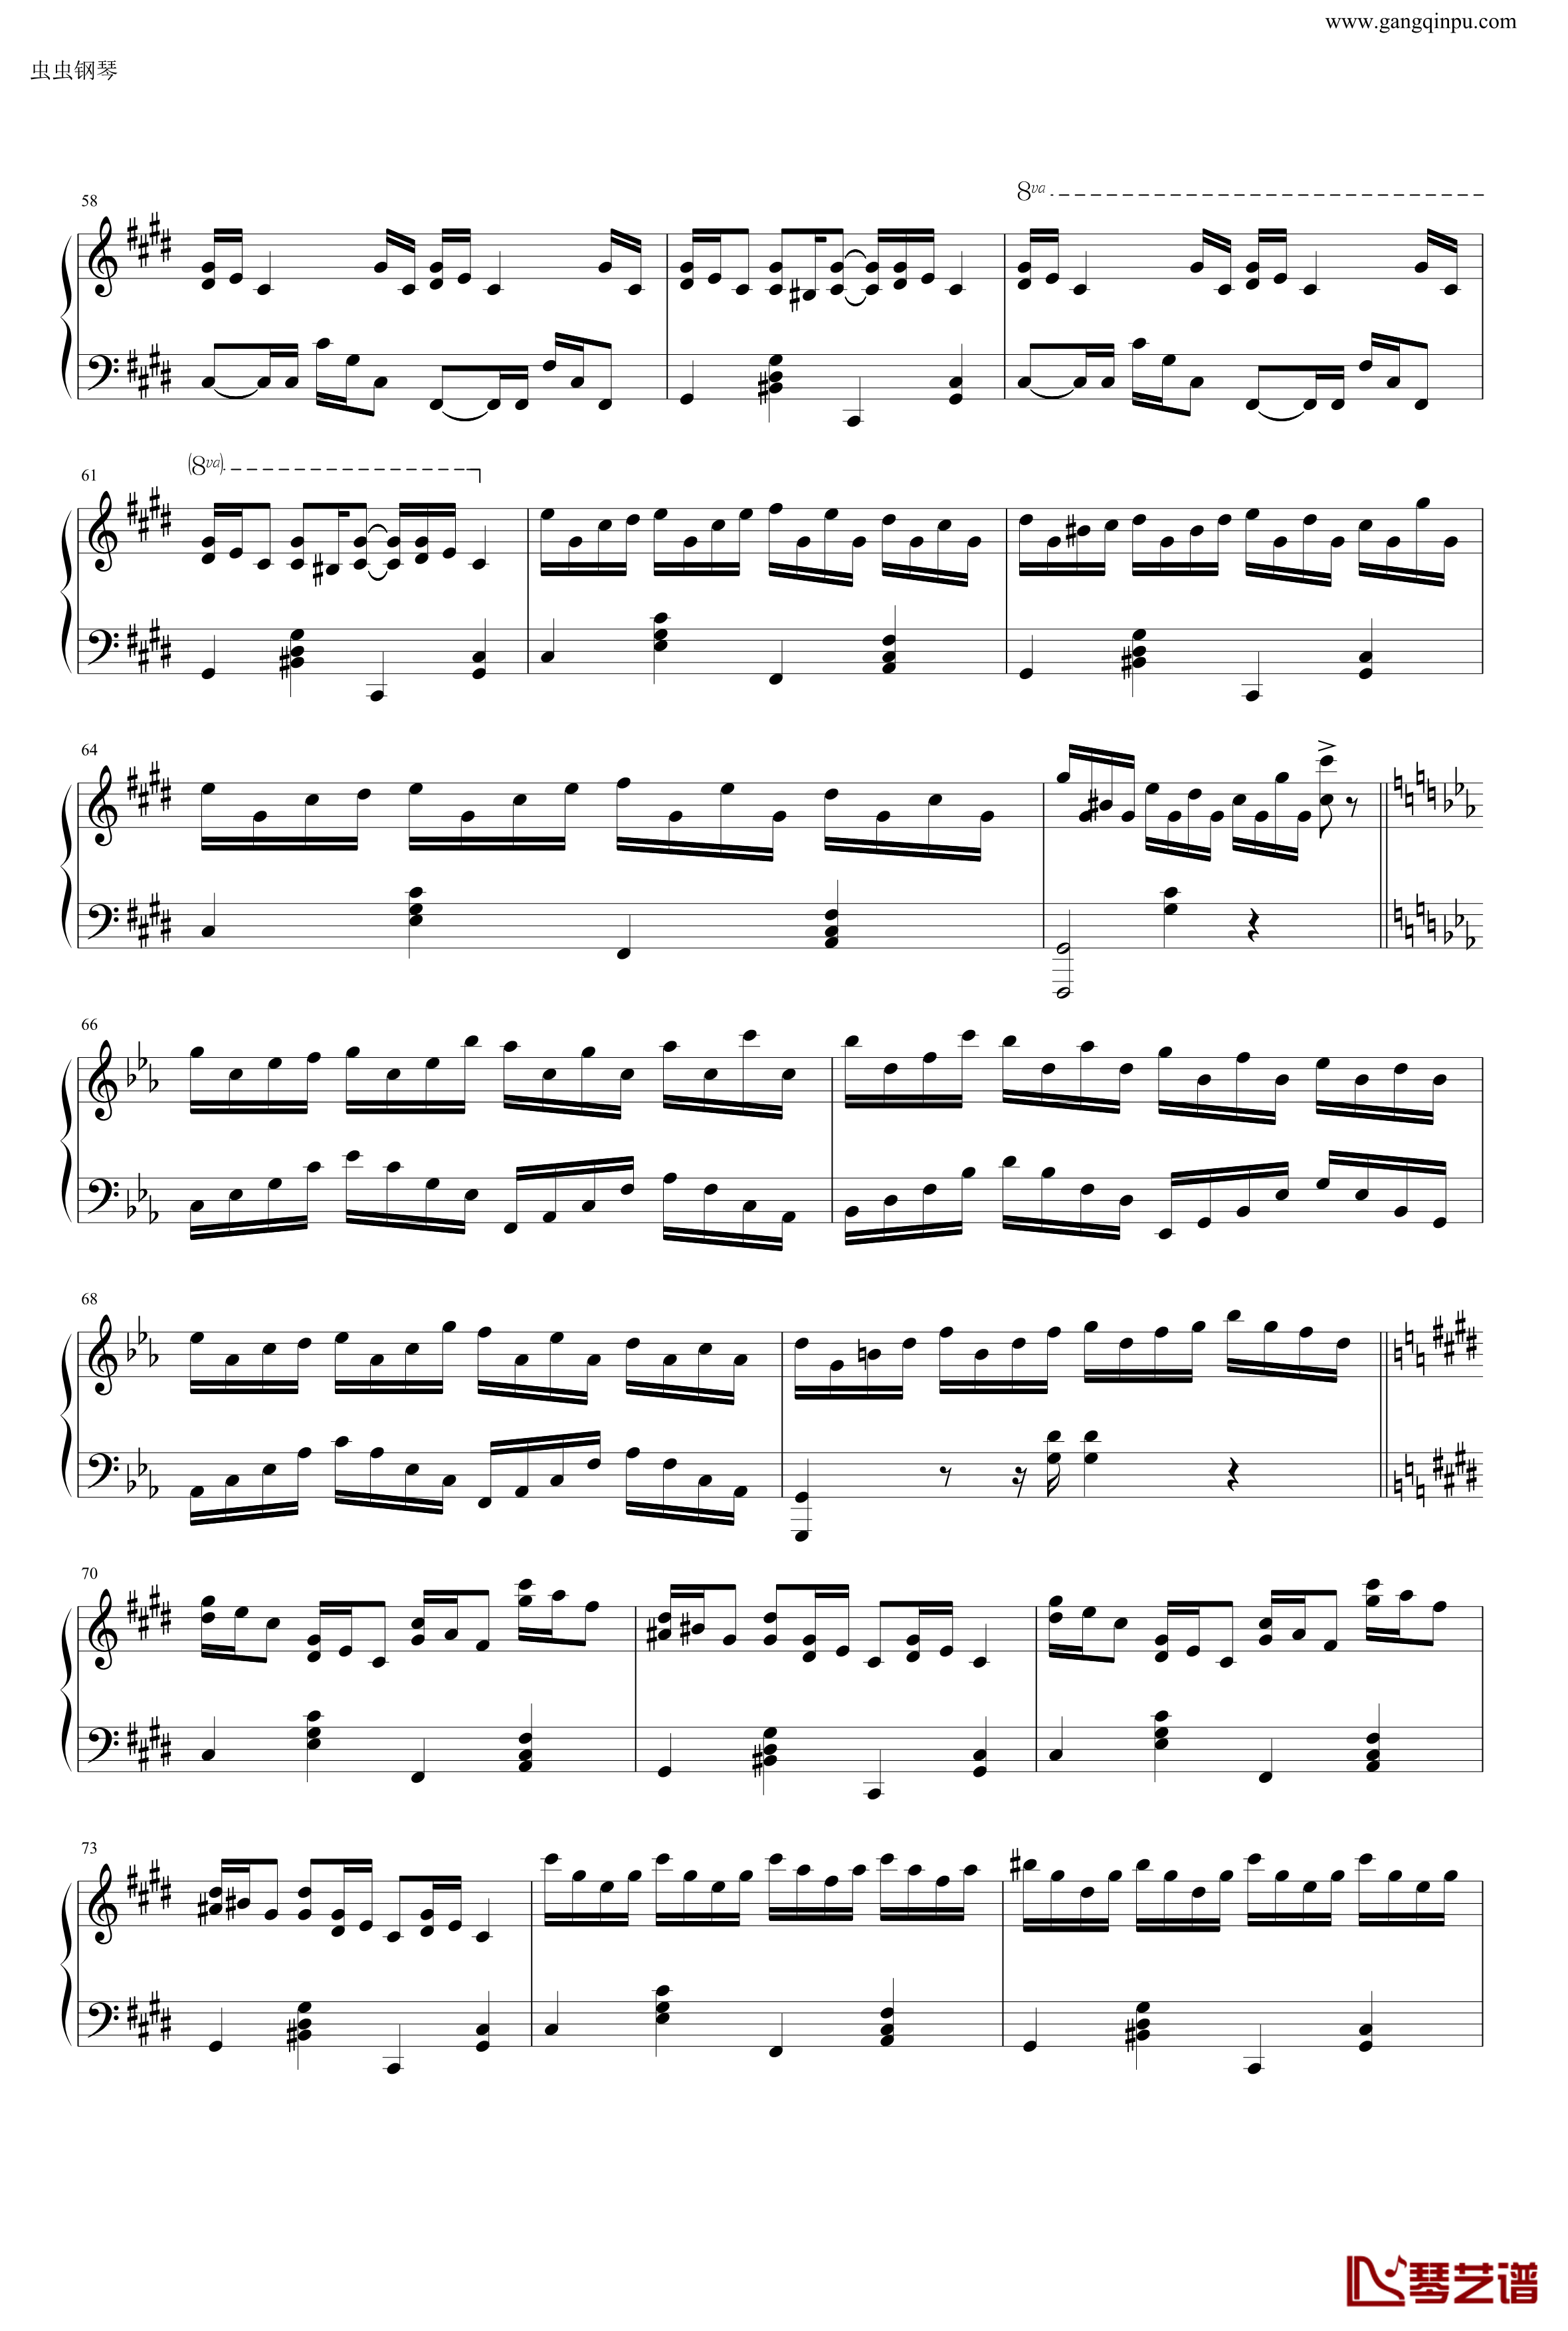 克罗地亚狂想曲钢琴谱-做了优化的纯正版-马克西姆-Maksim·Mrvica4